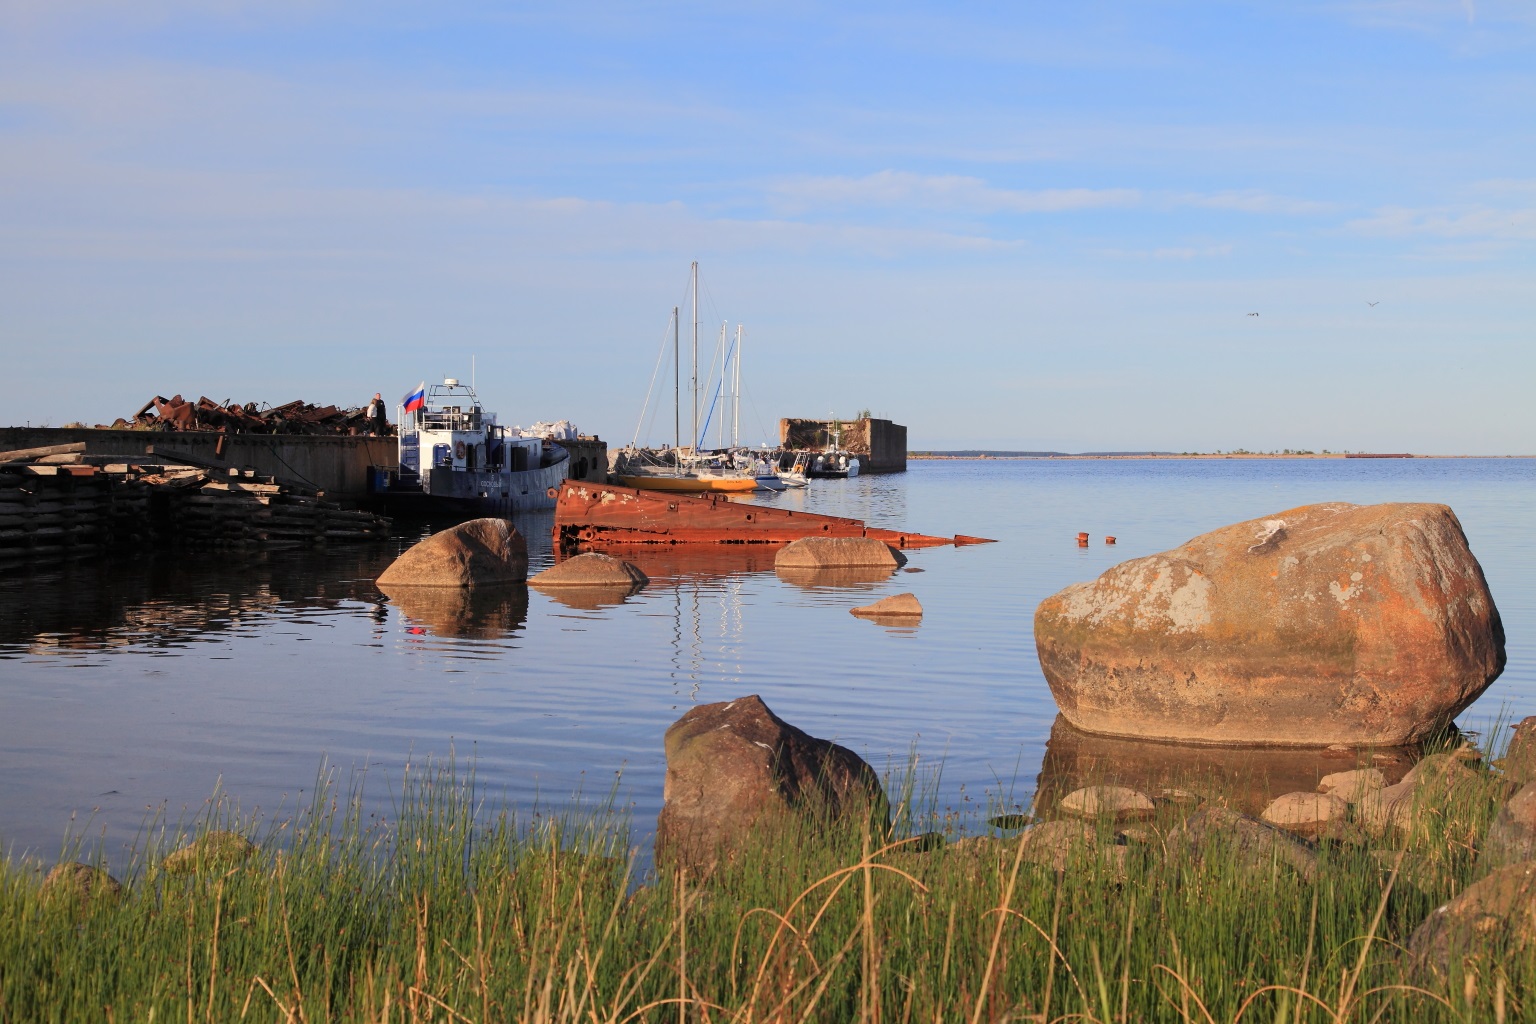 Остров Лавенсаари в финском заливе